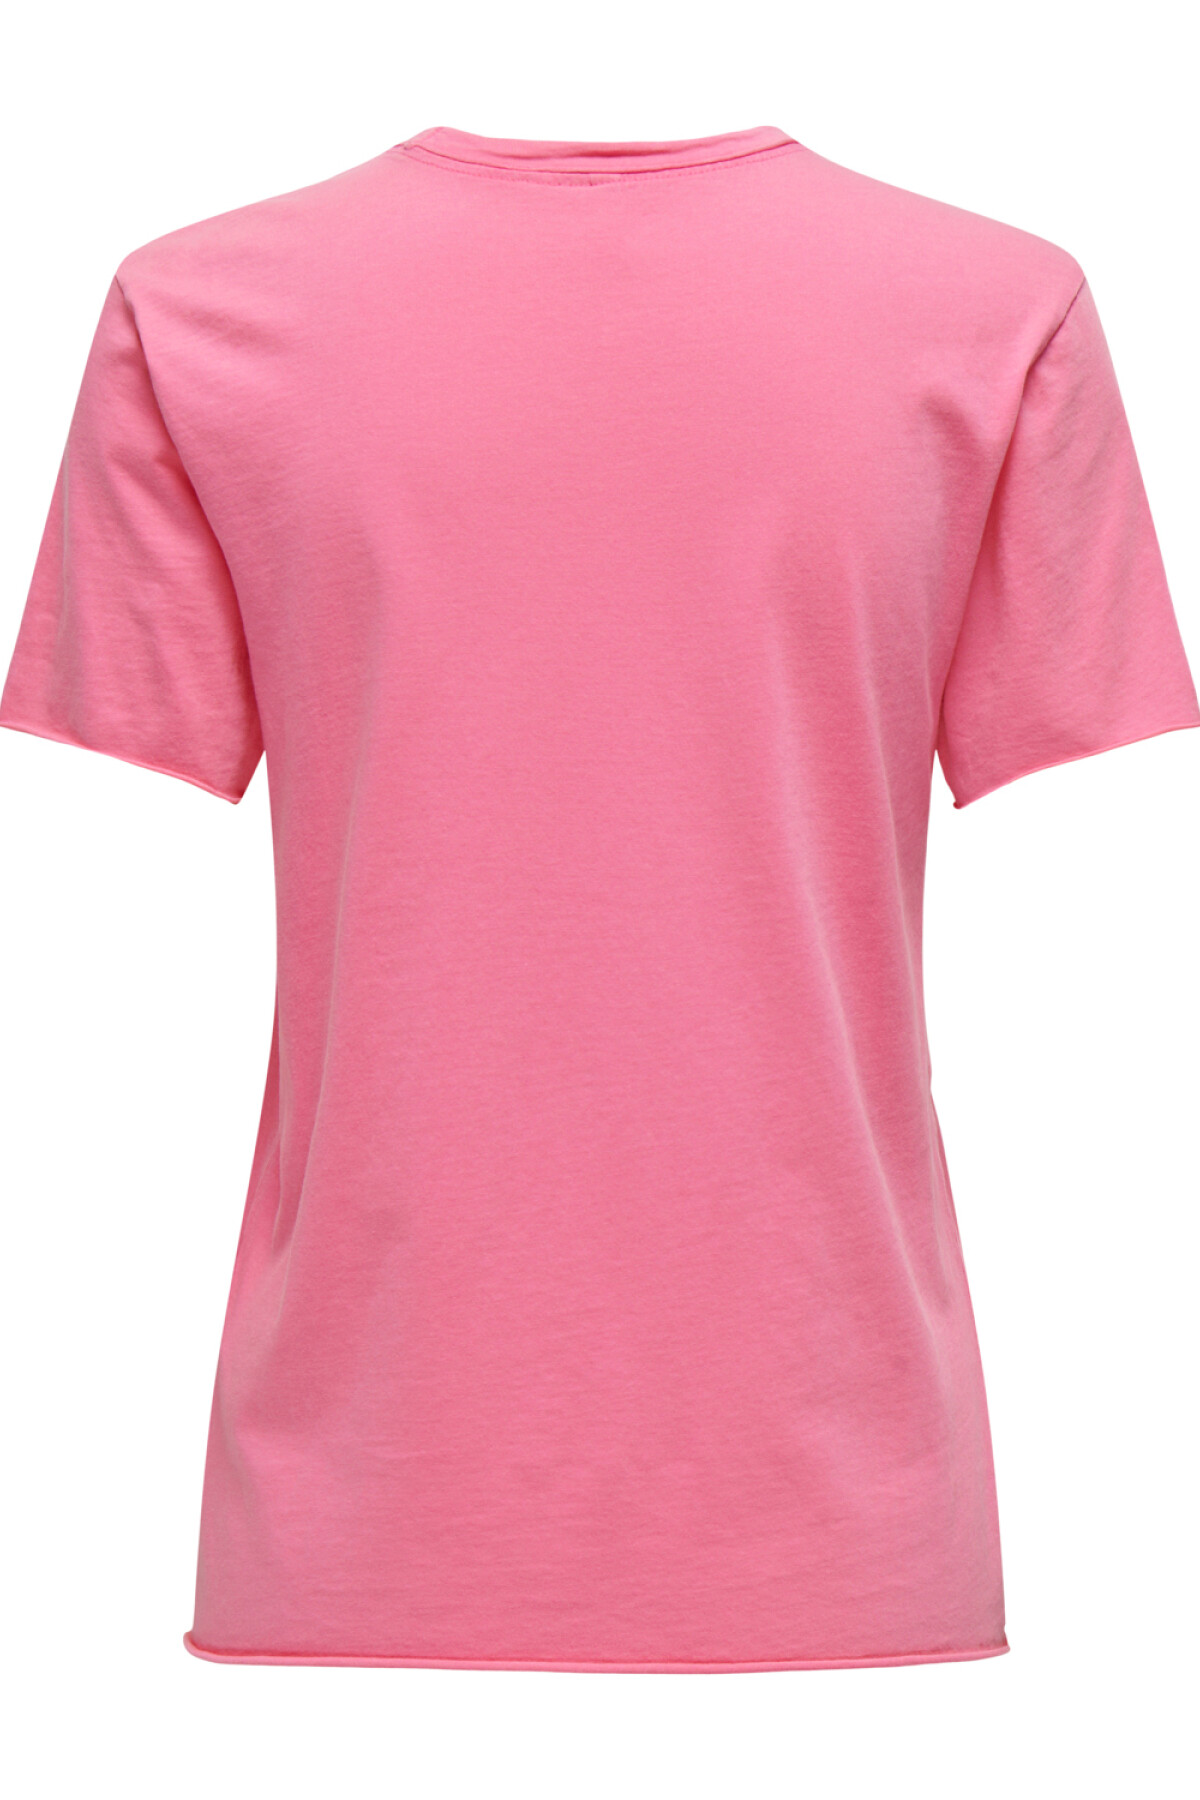 Camiseta Lucky Azalea Pink